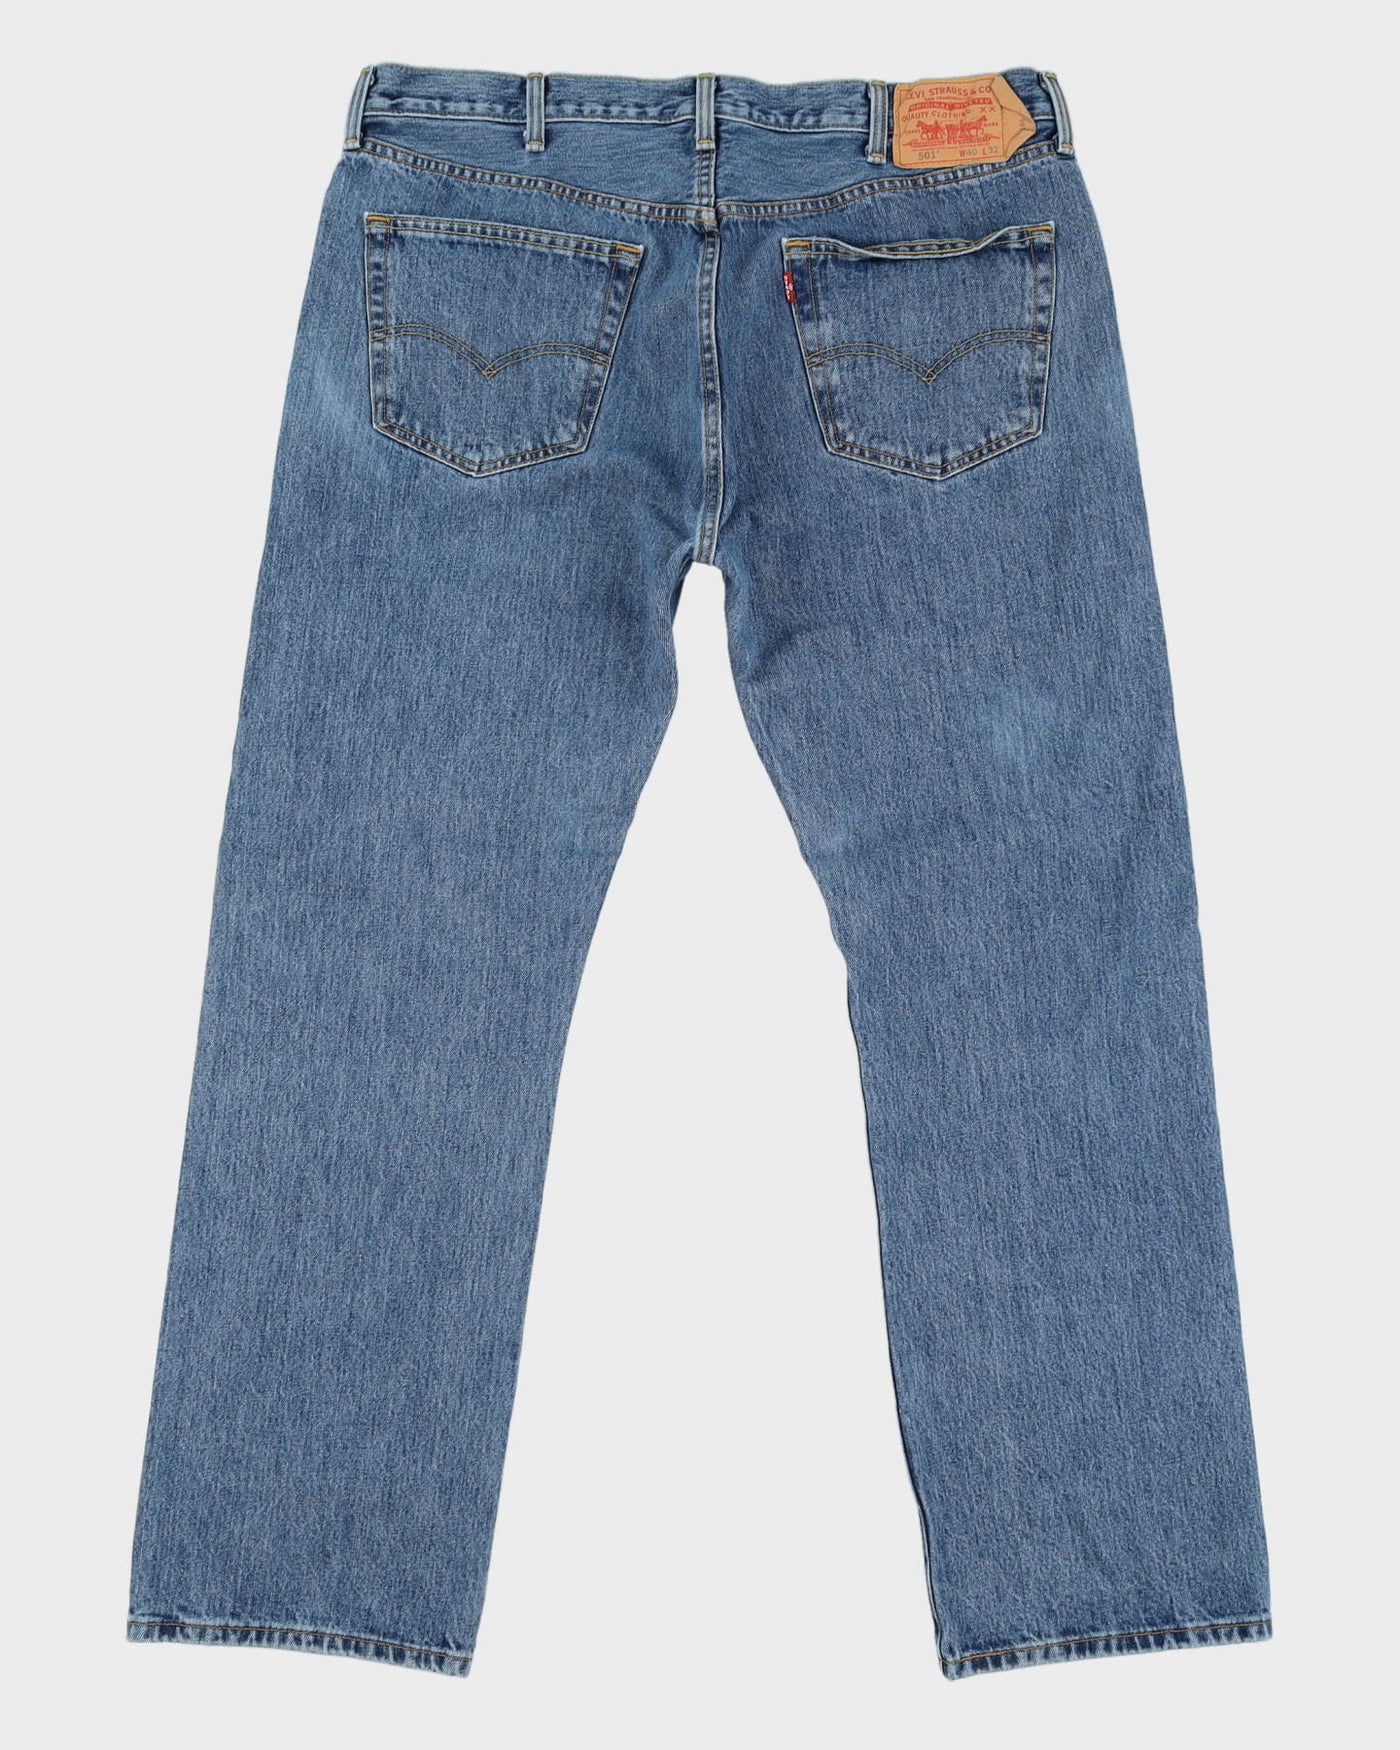 Levi's 501 Blue Medium Wash Jeans - W40 L32